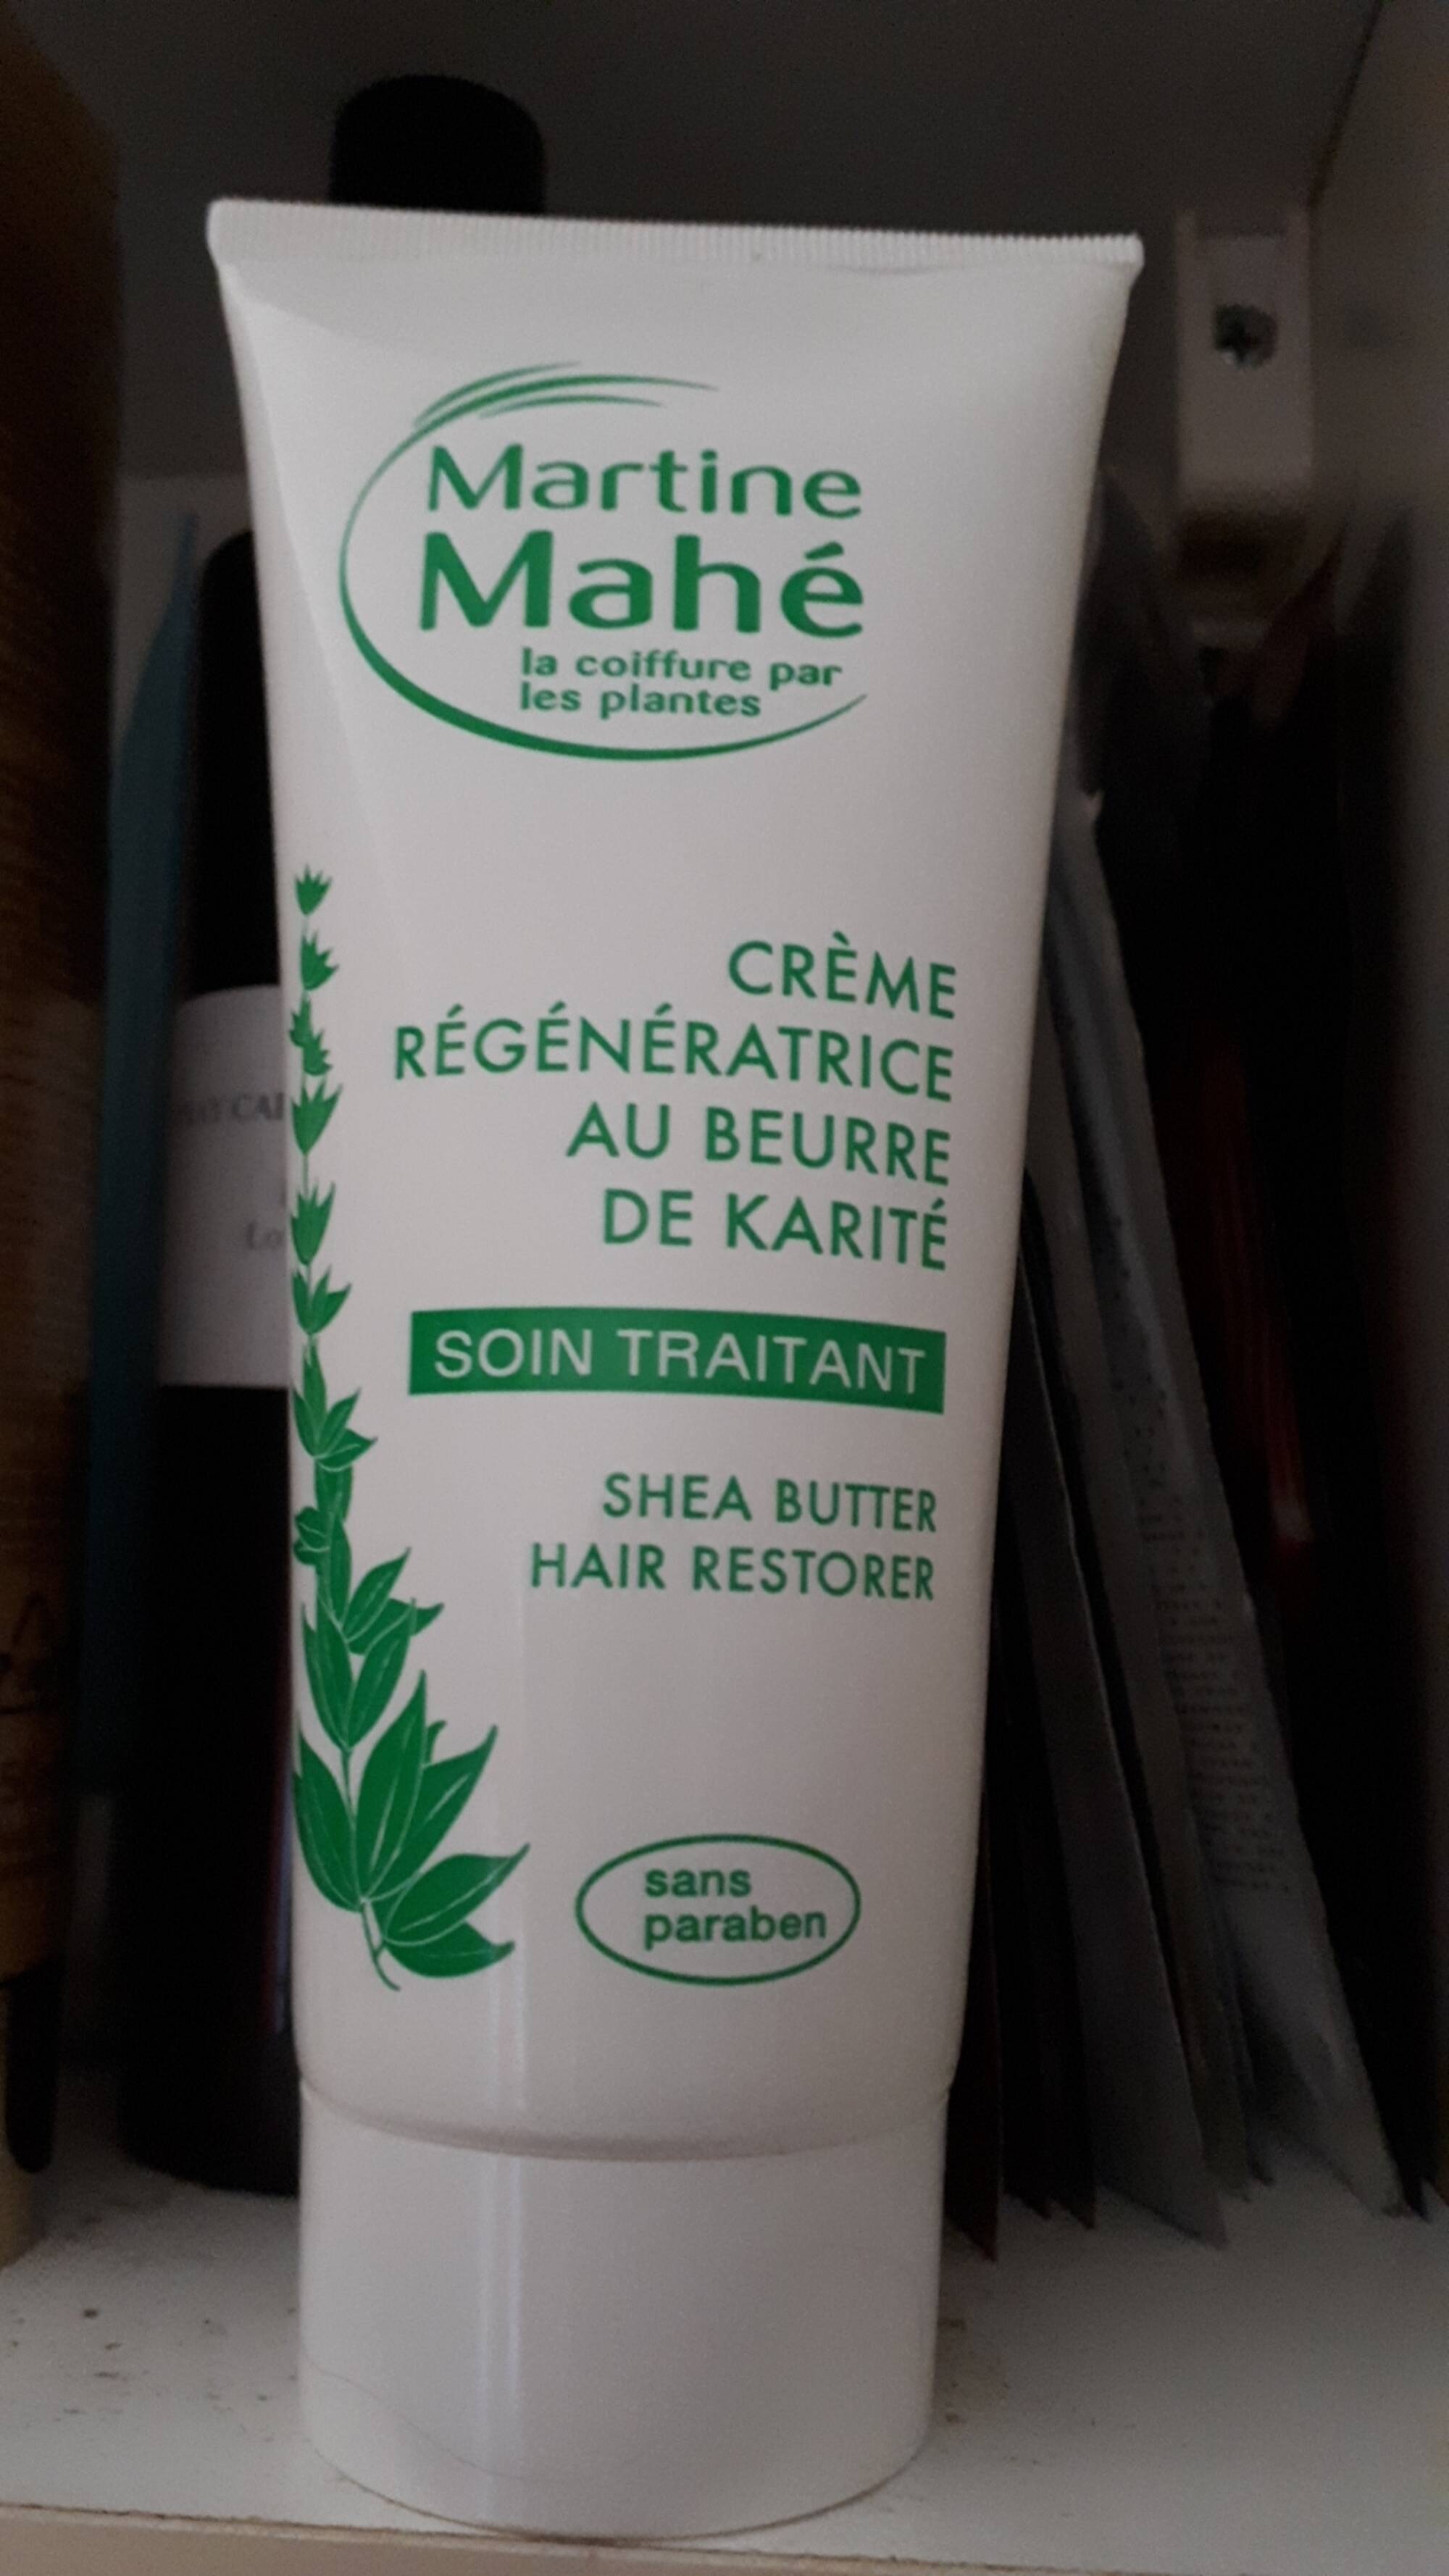 MARTINE MAHÉ - Soin traitant - Crème régénératrice au beurre de karité